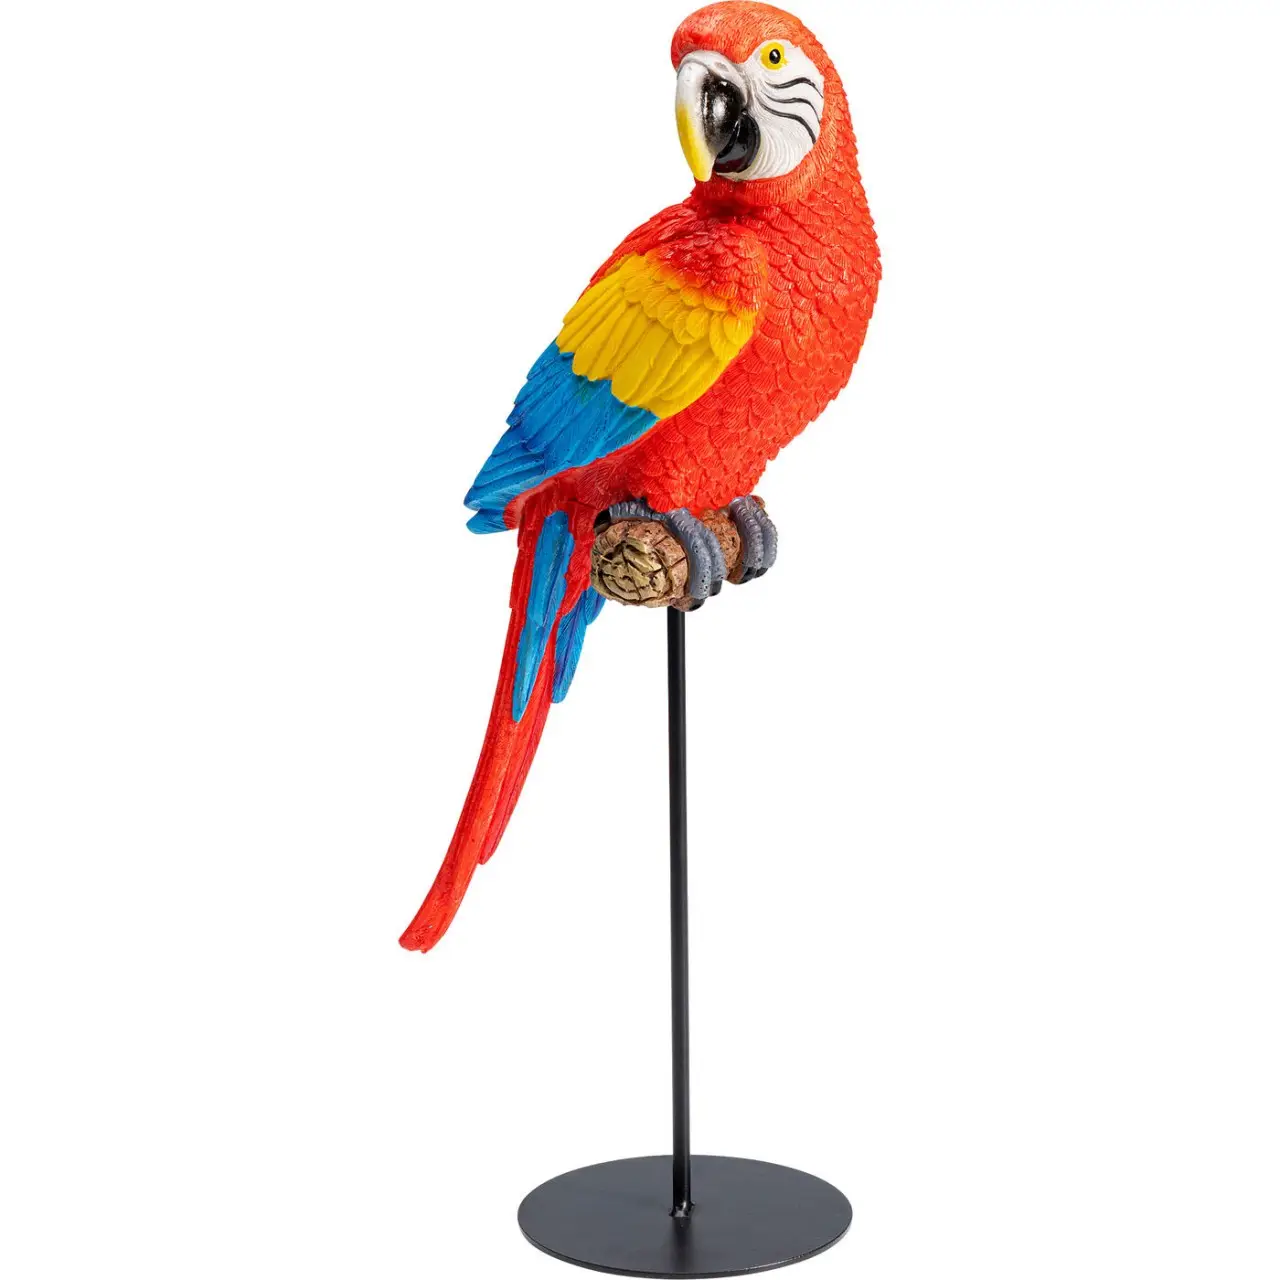 Deko Figur Parrot Macaw